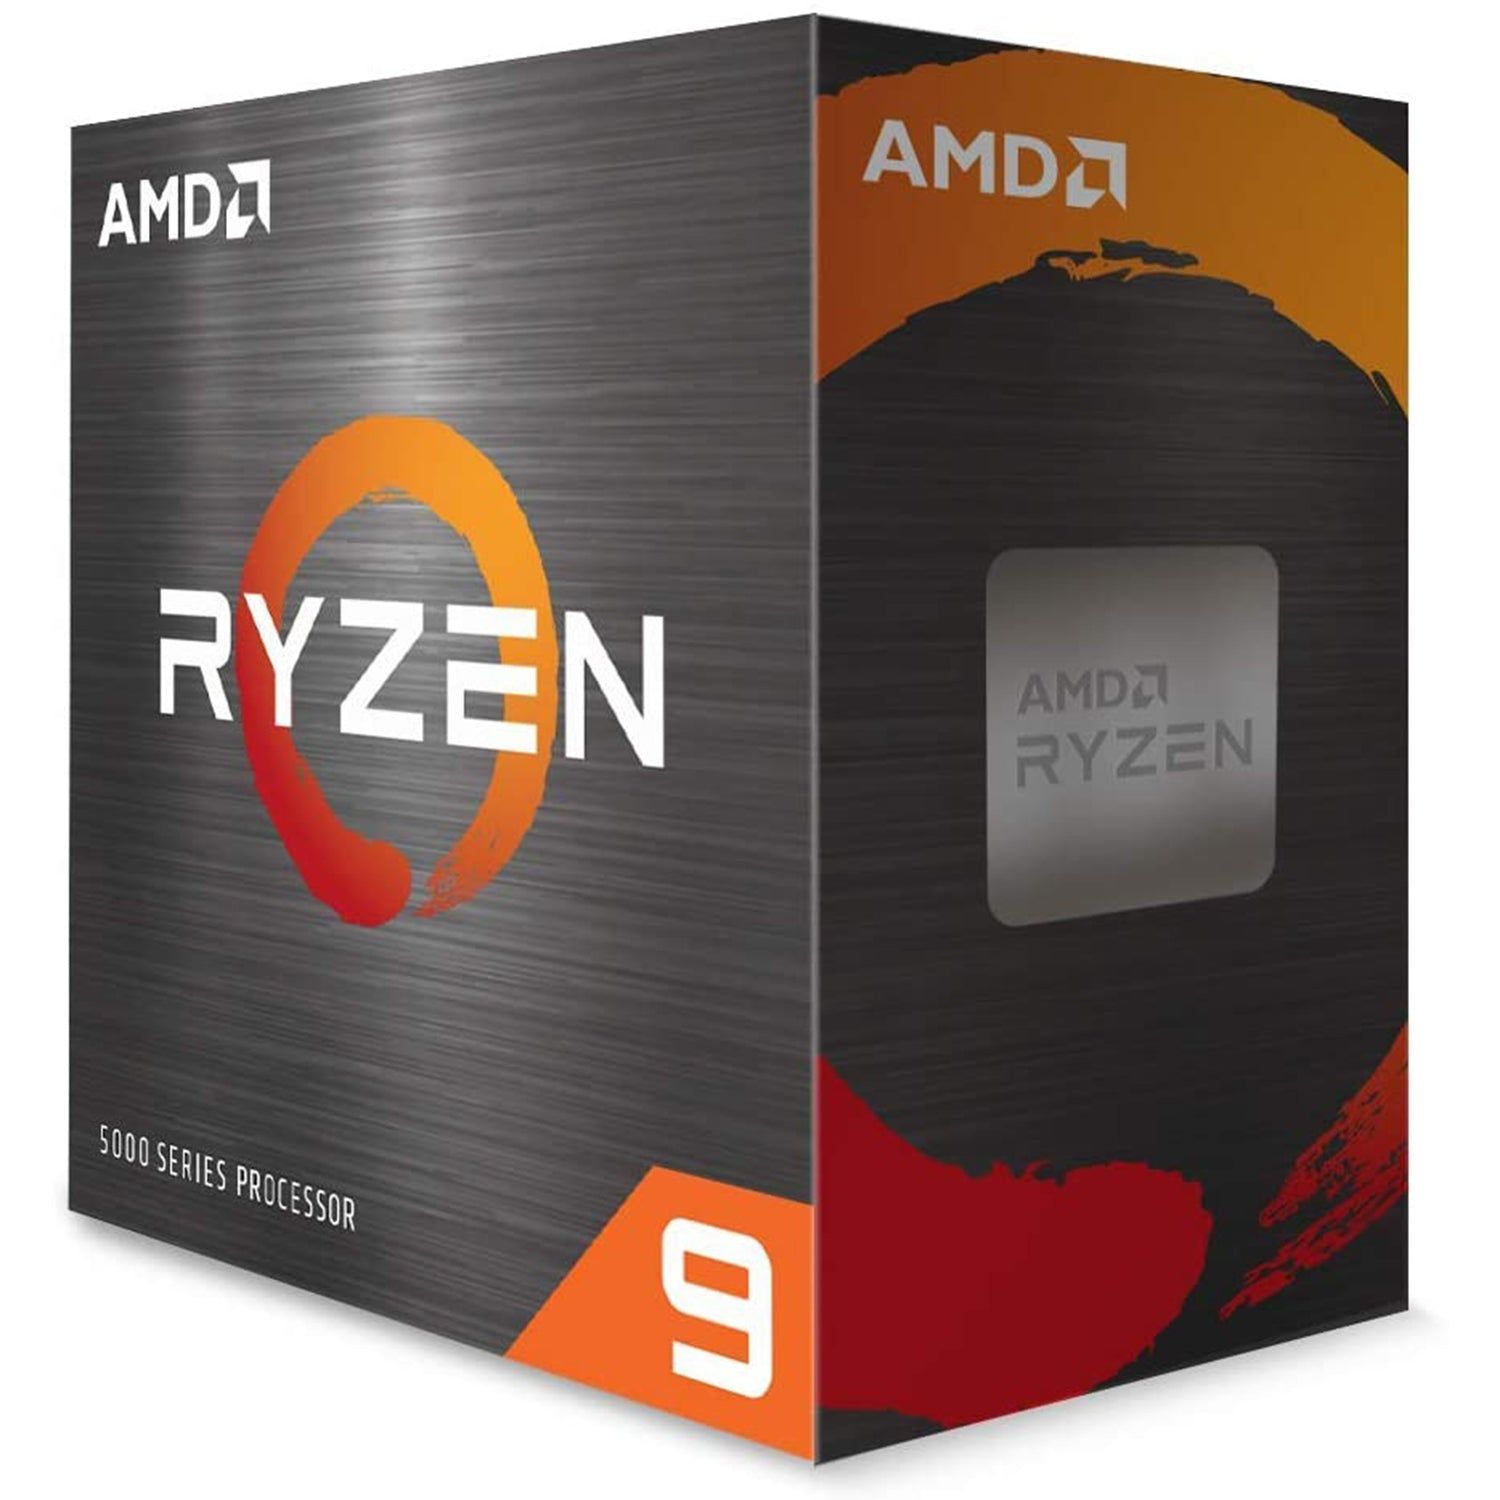 AMD Ryzen 9 5900X - OVERCLOCK Computer